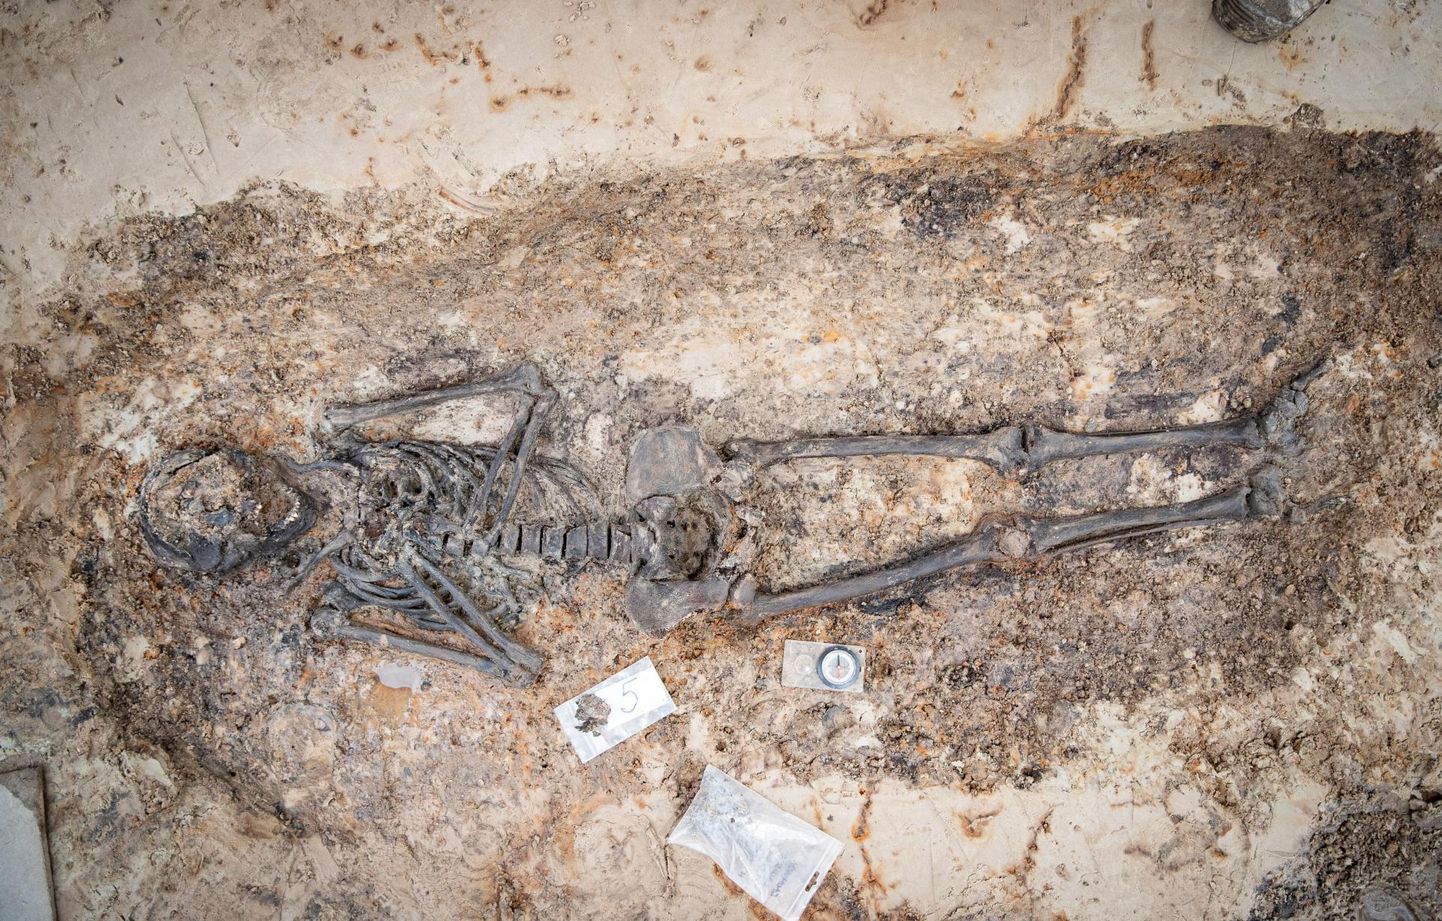 При раскопках нашли останки восьми человек, они были очень аккуратно похоронены, что указывает на церковное кладбище.